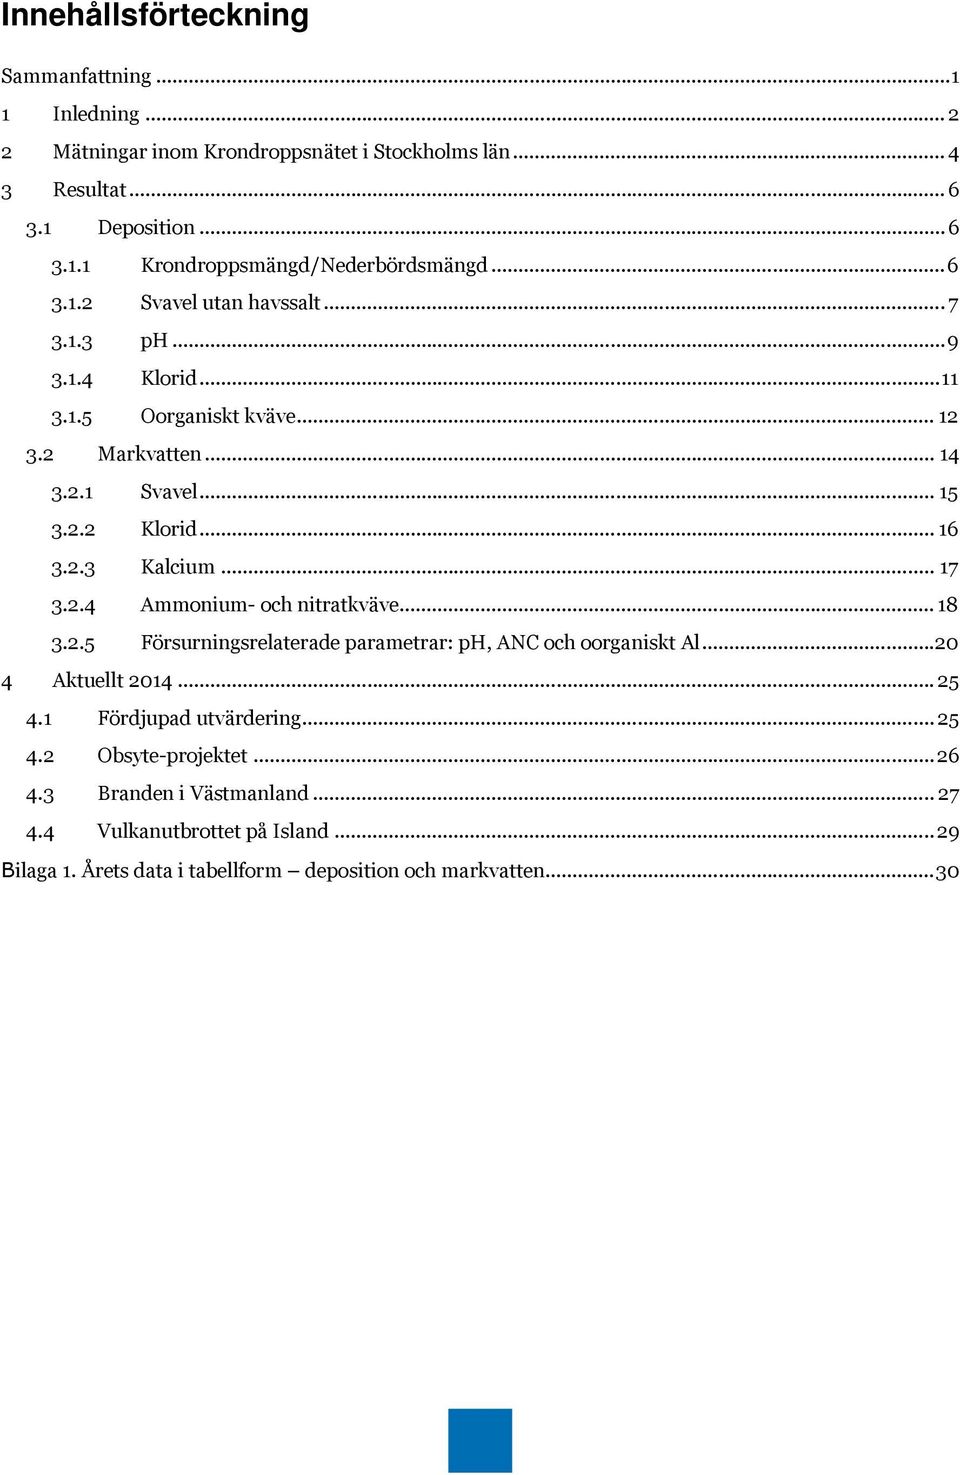 .. 17 3.2.4 Ammonium- och nitratkväve... 18 3.2.5 Försurningsrelaterade parametrar: ph, ANC och oorganiskt Al... 20 4 Aktuellt 2014... 25 4.1 Fördjupad utvärdering... 25 4.2 Obsyte-projektet.